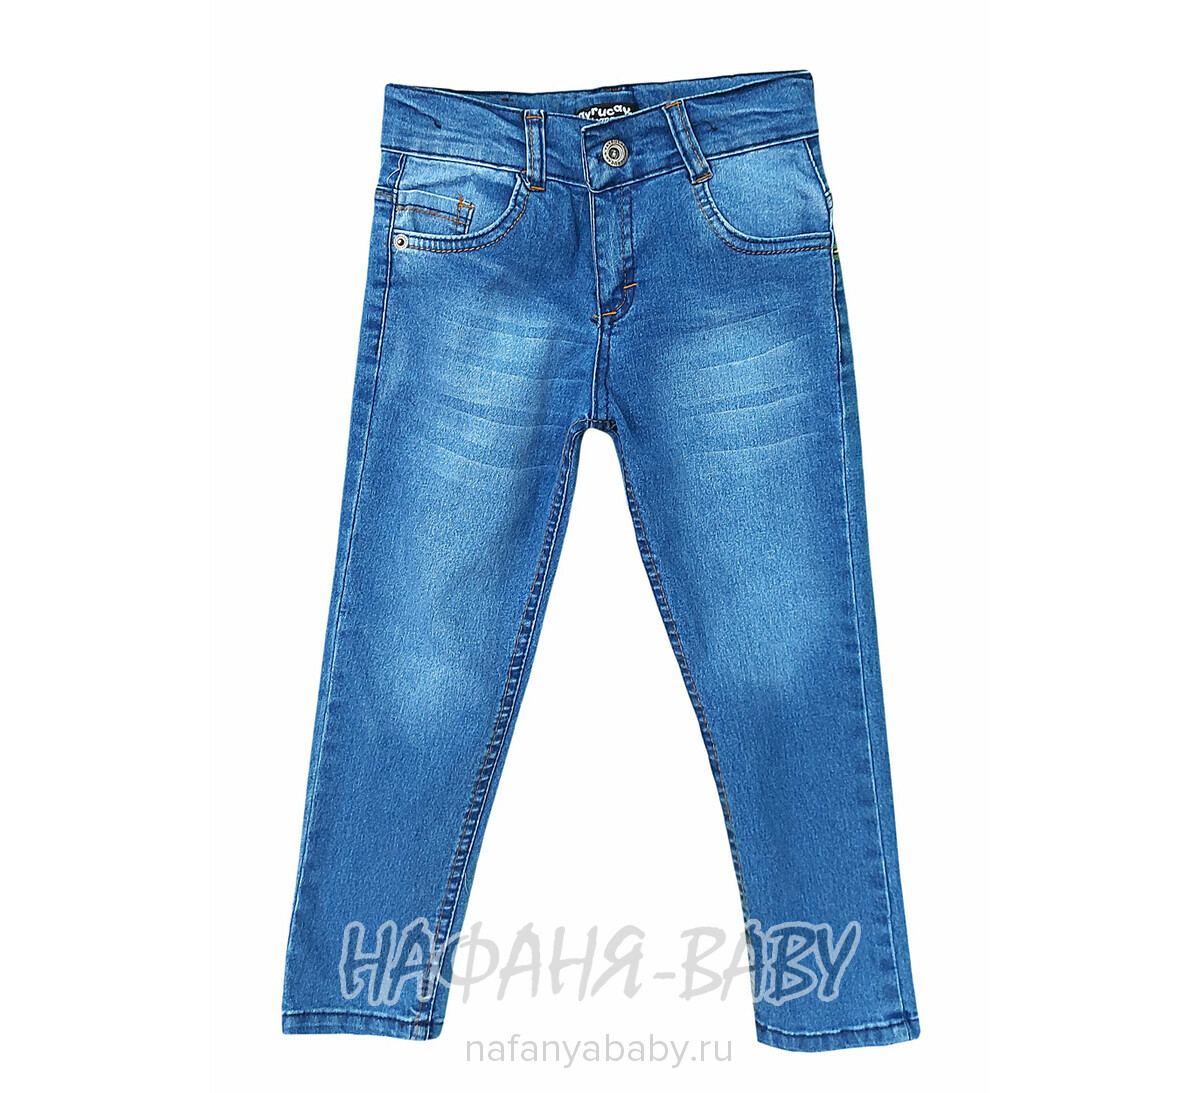 Детские джинсы YAVRUCAK арт: 4203 для мальчика от 3 до 7 лет, оптом Турция